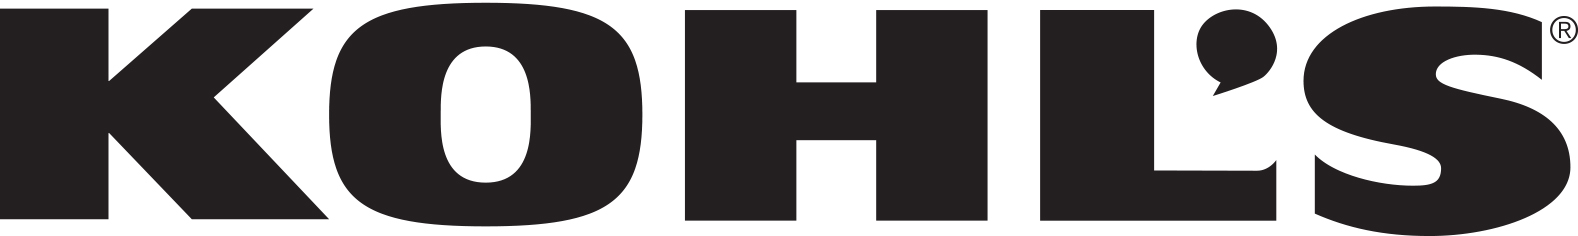 Kohl's Black Logo.jpg